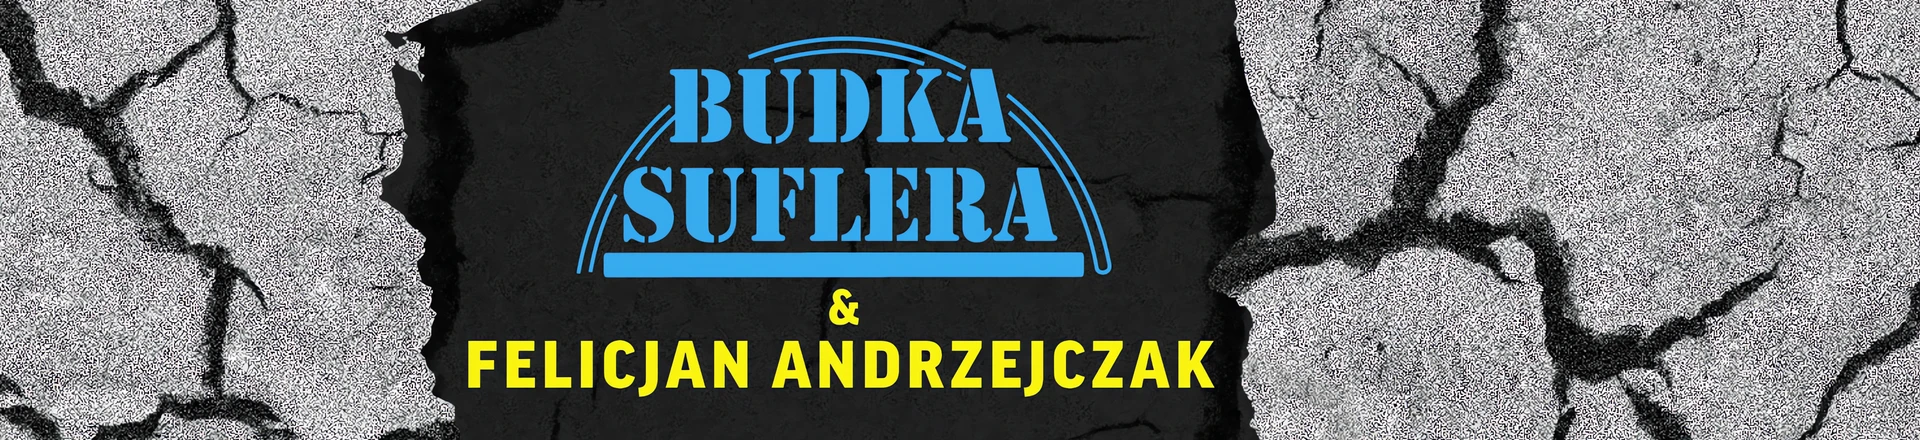 Budka Suflera & Felicjan Andrzejczak prezentują pierwszy singiel i teledysk